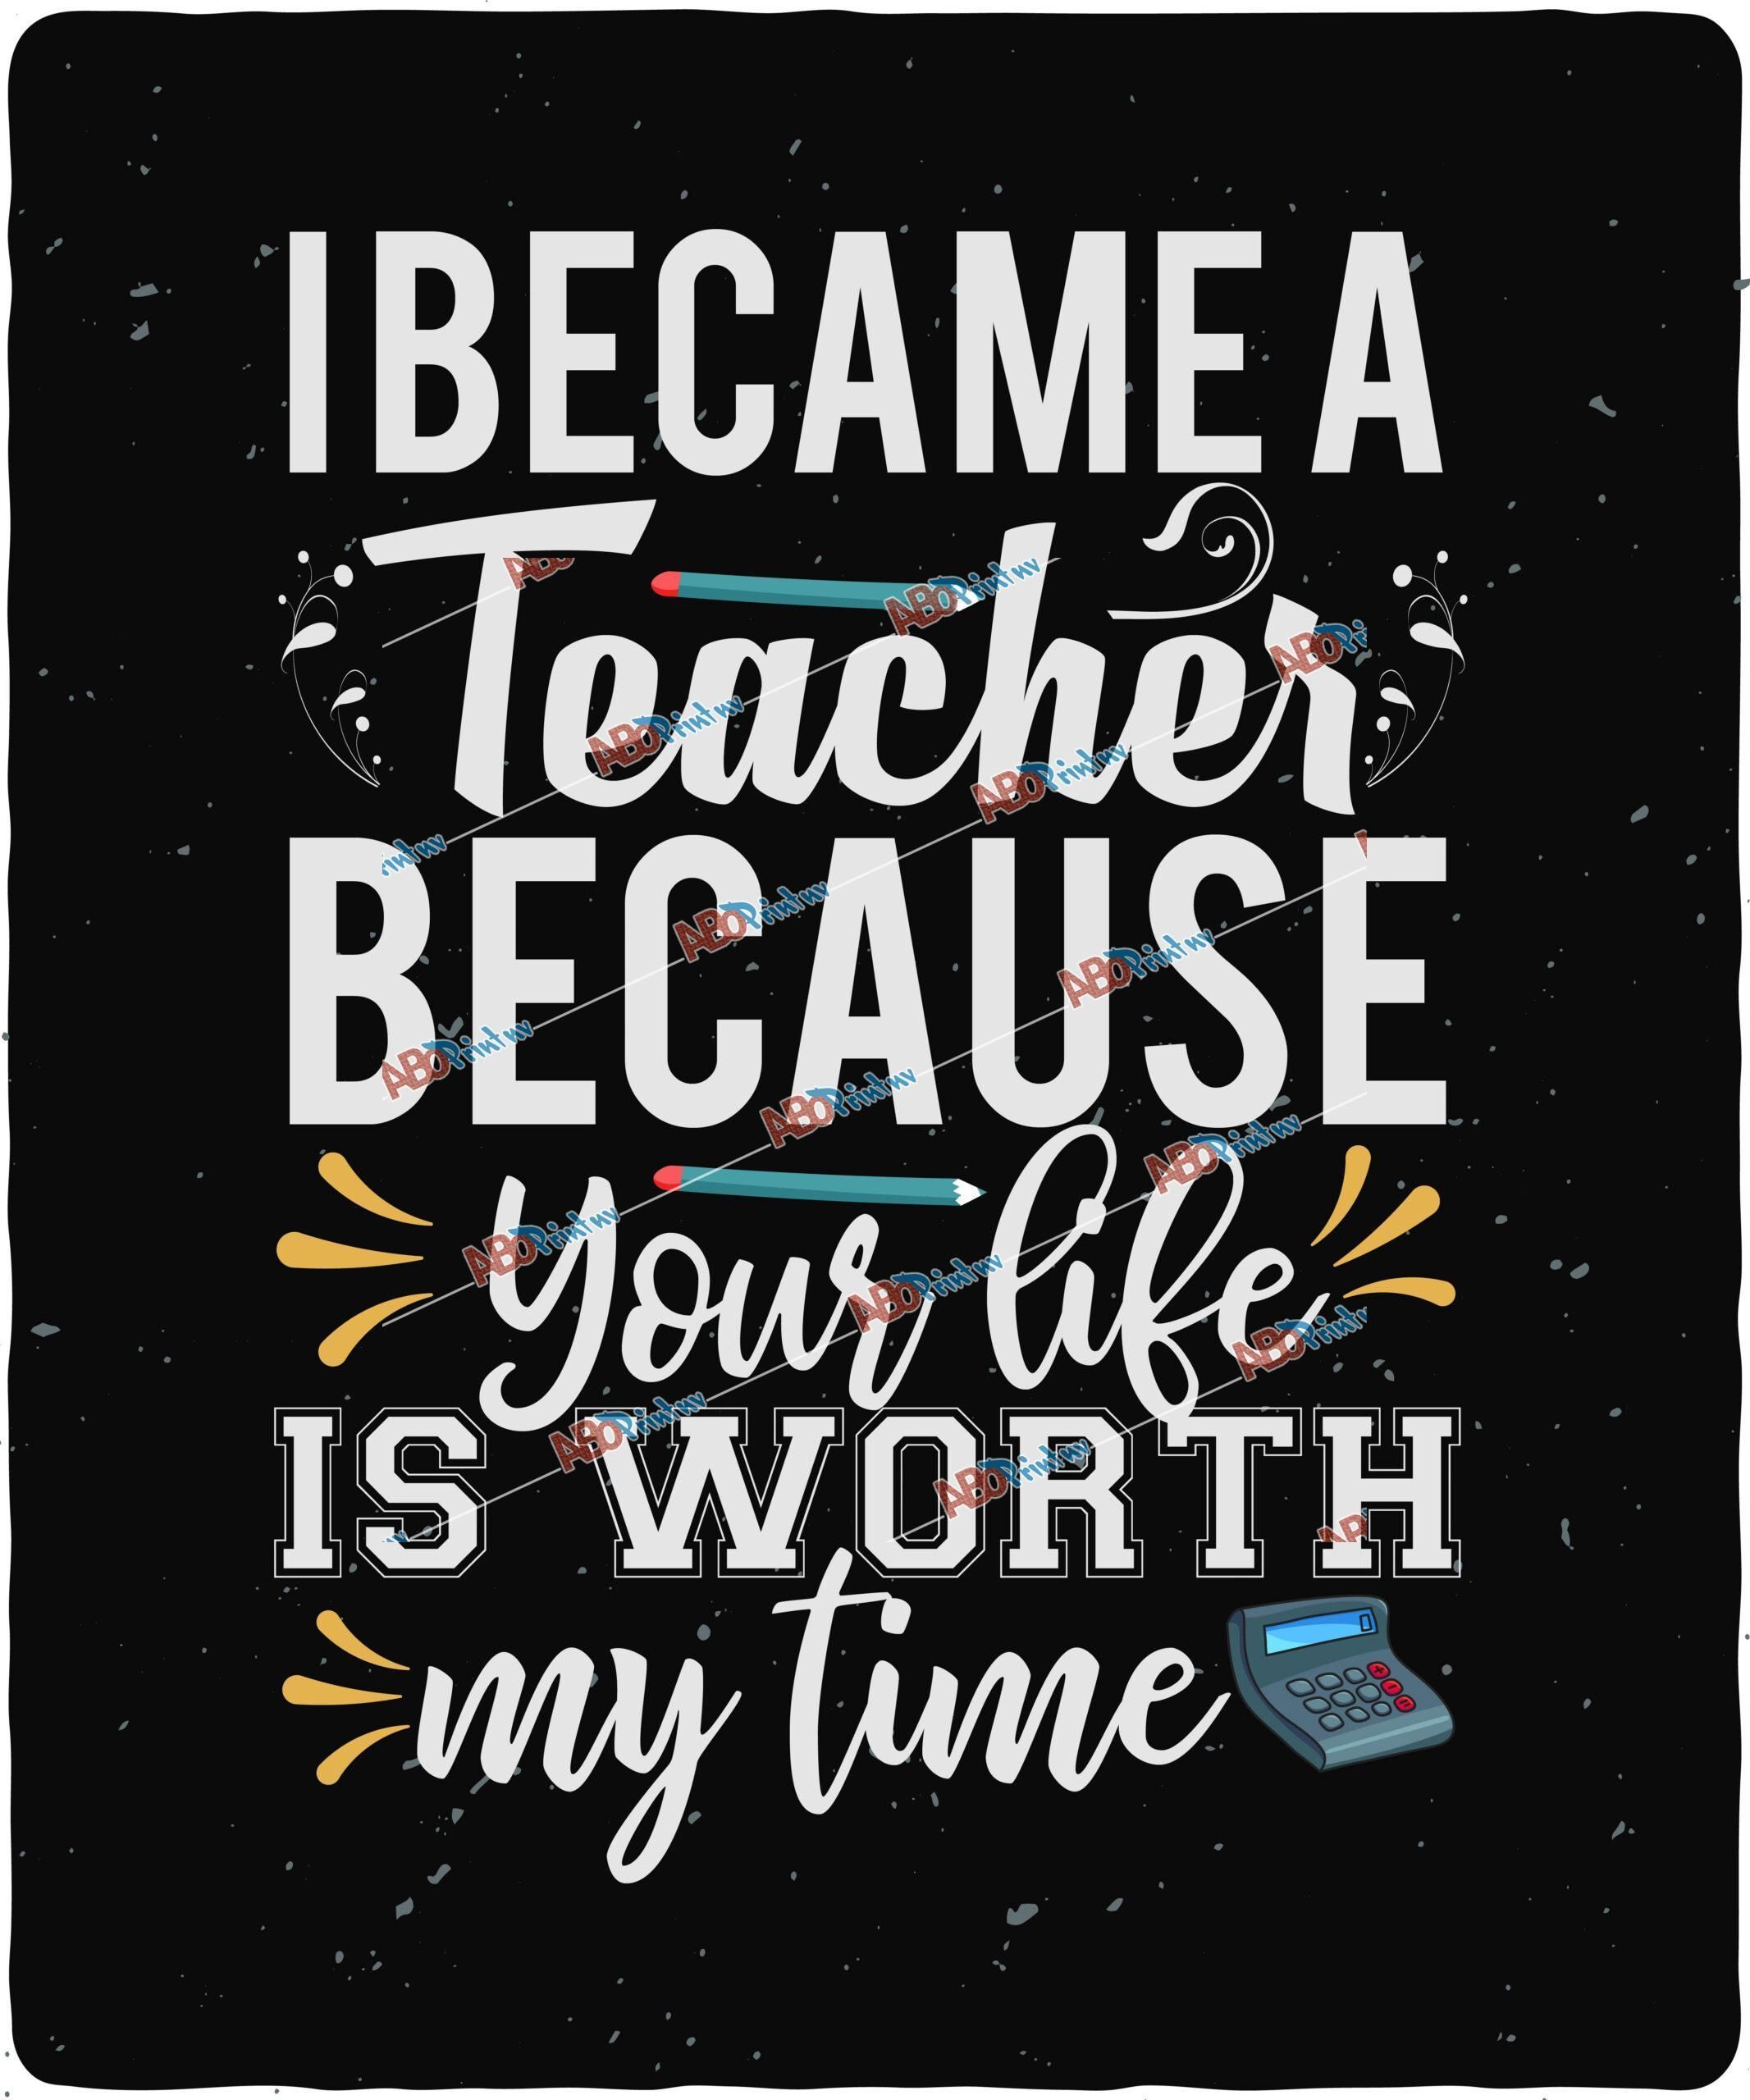 I became a teacher because your life